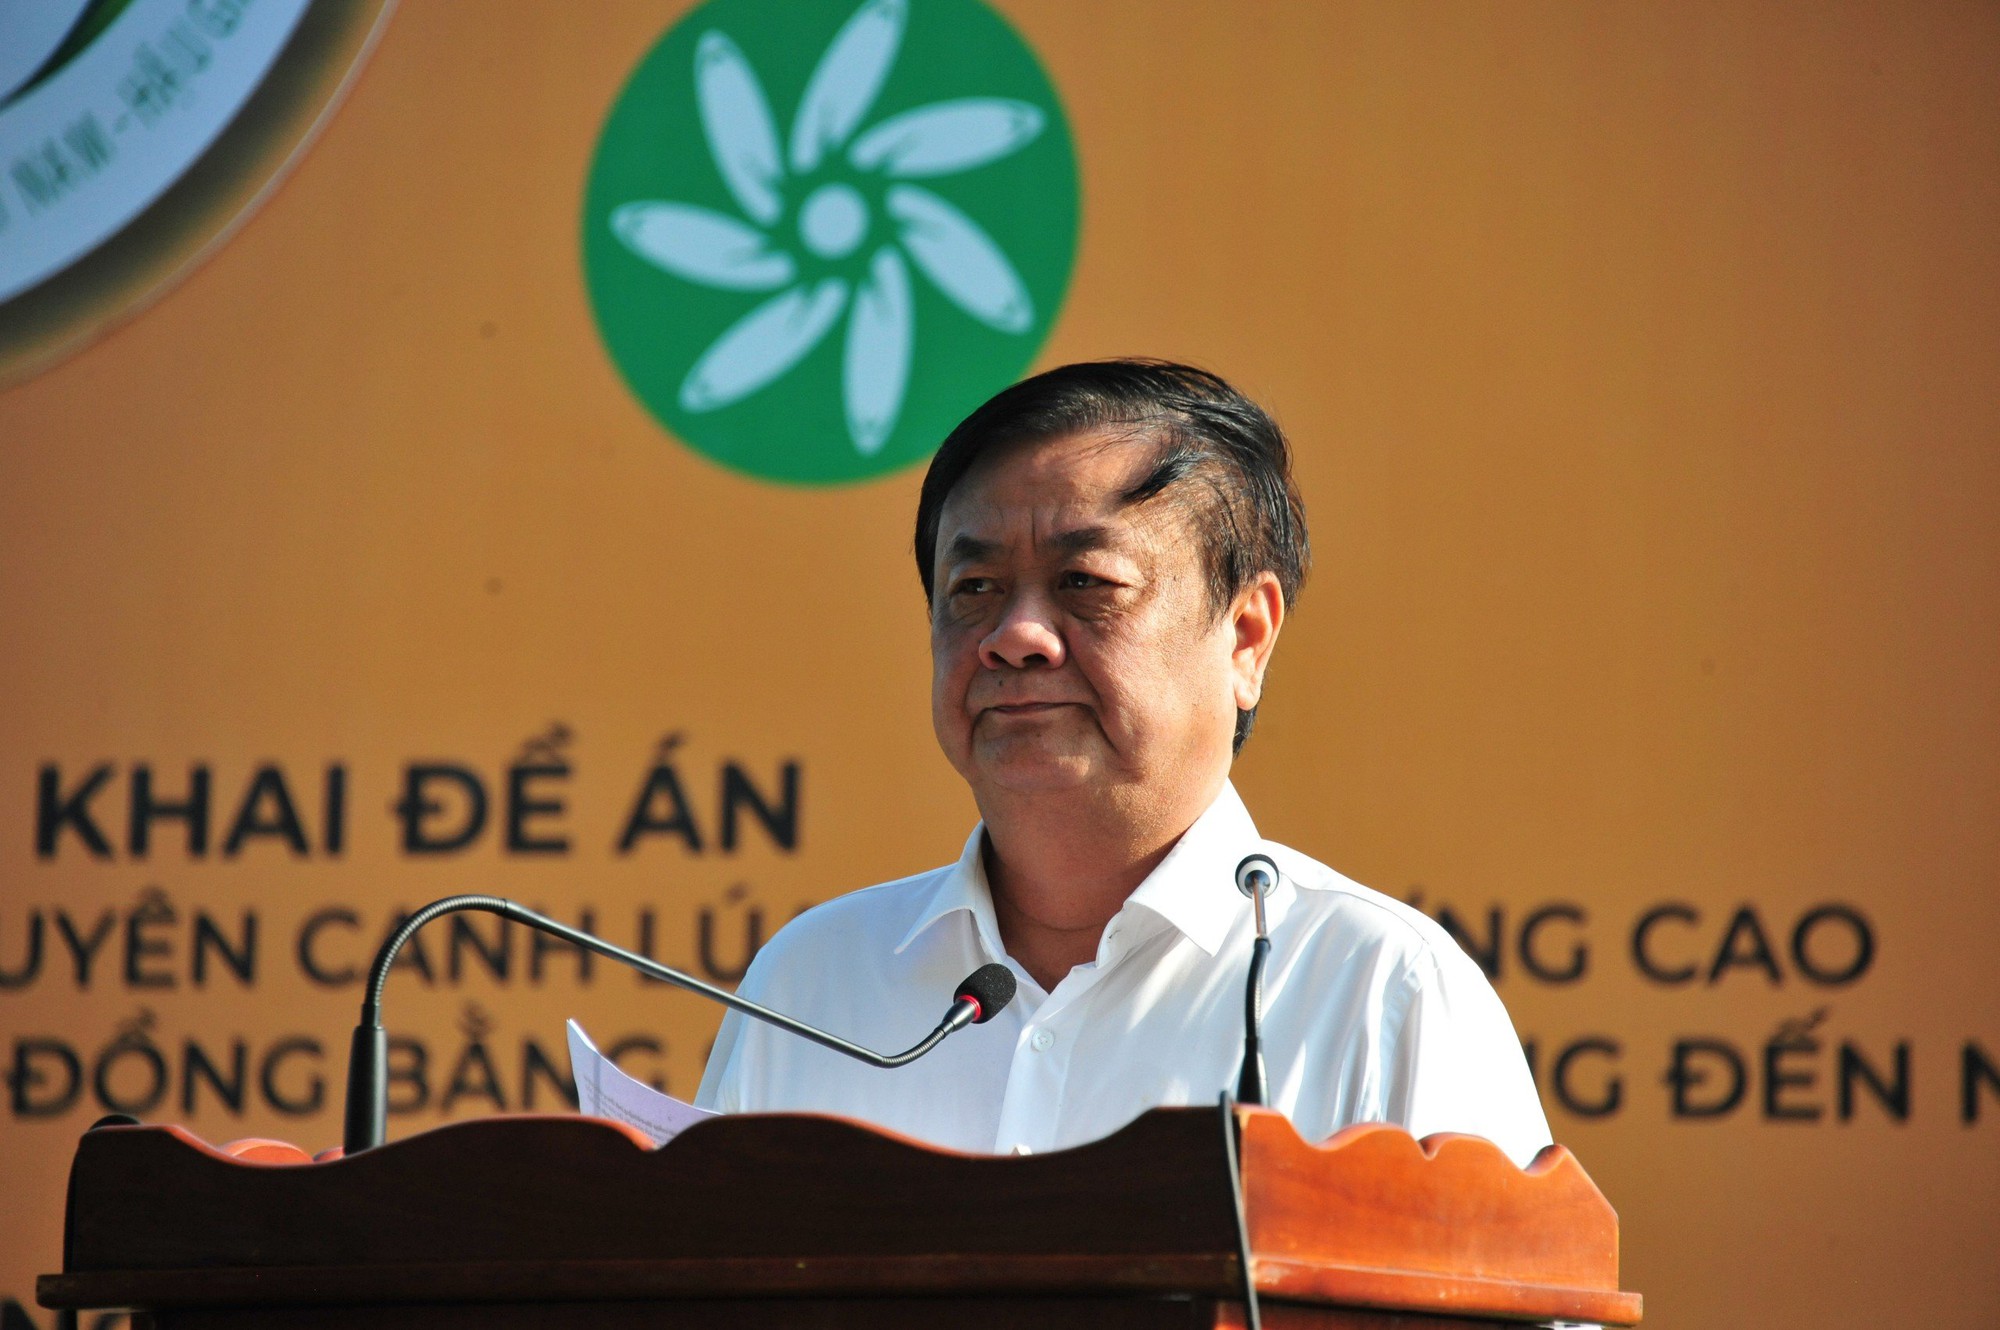 Bình Điền đóng góp ý tưởng cho đề án một triệu ha chuyên canh lúa chất lượng cao - Ảnh 6.